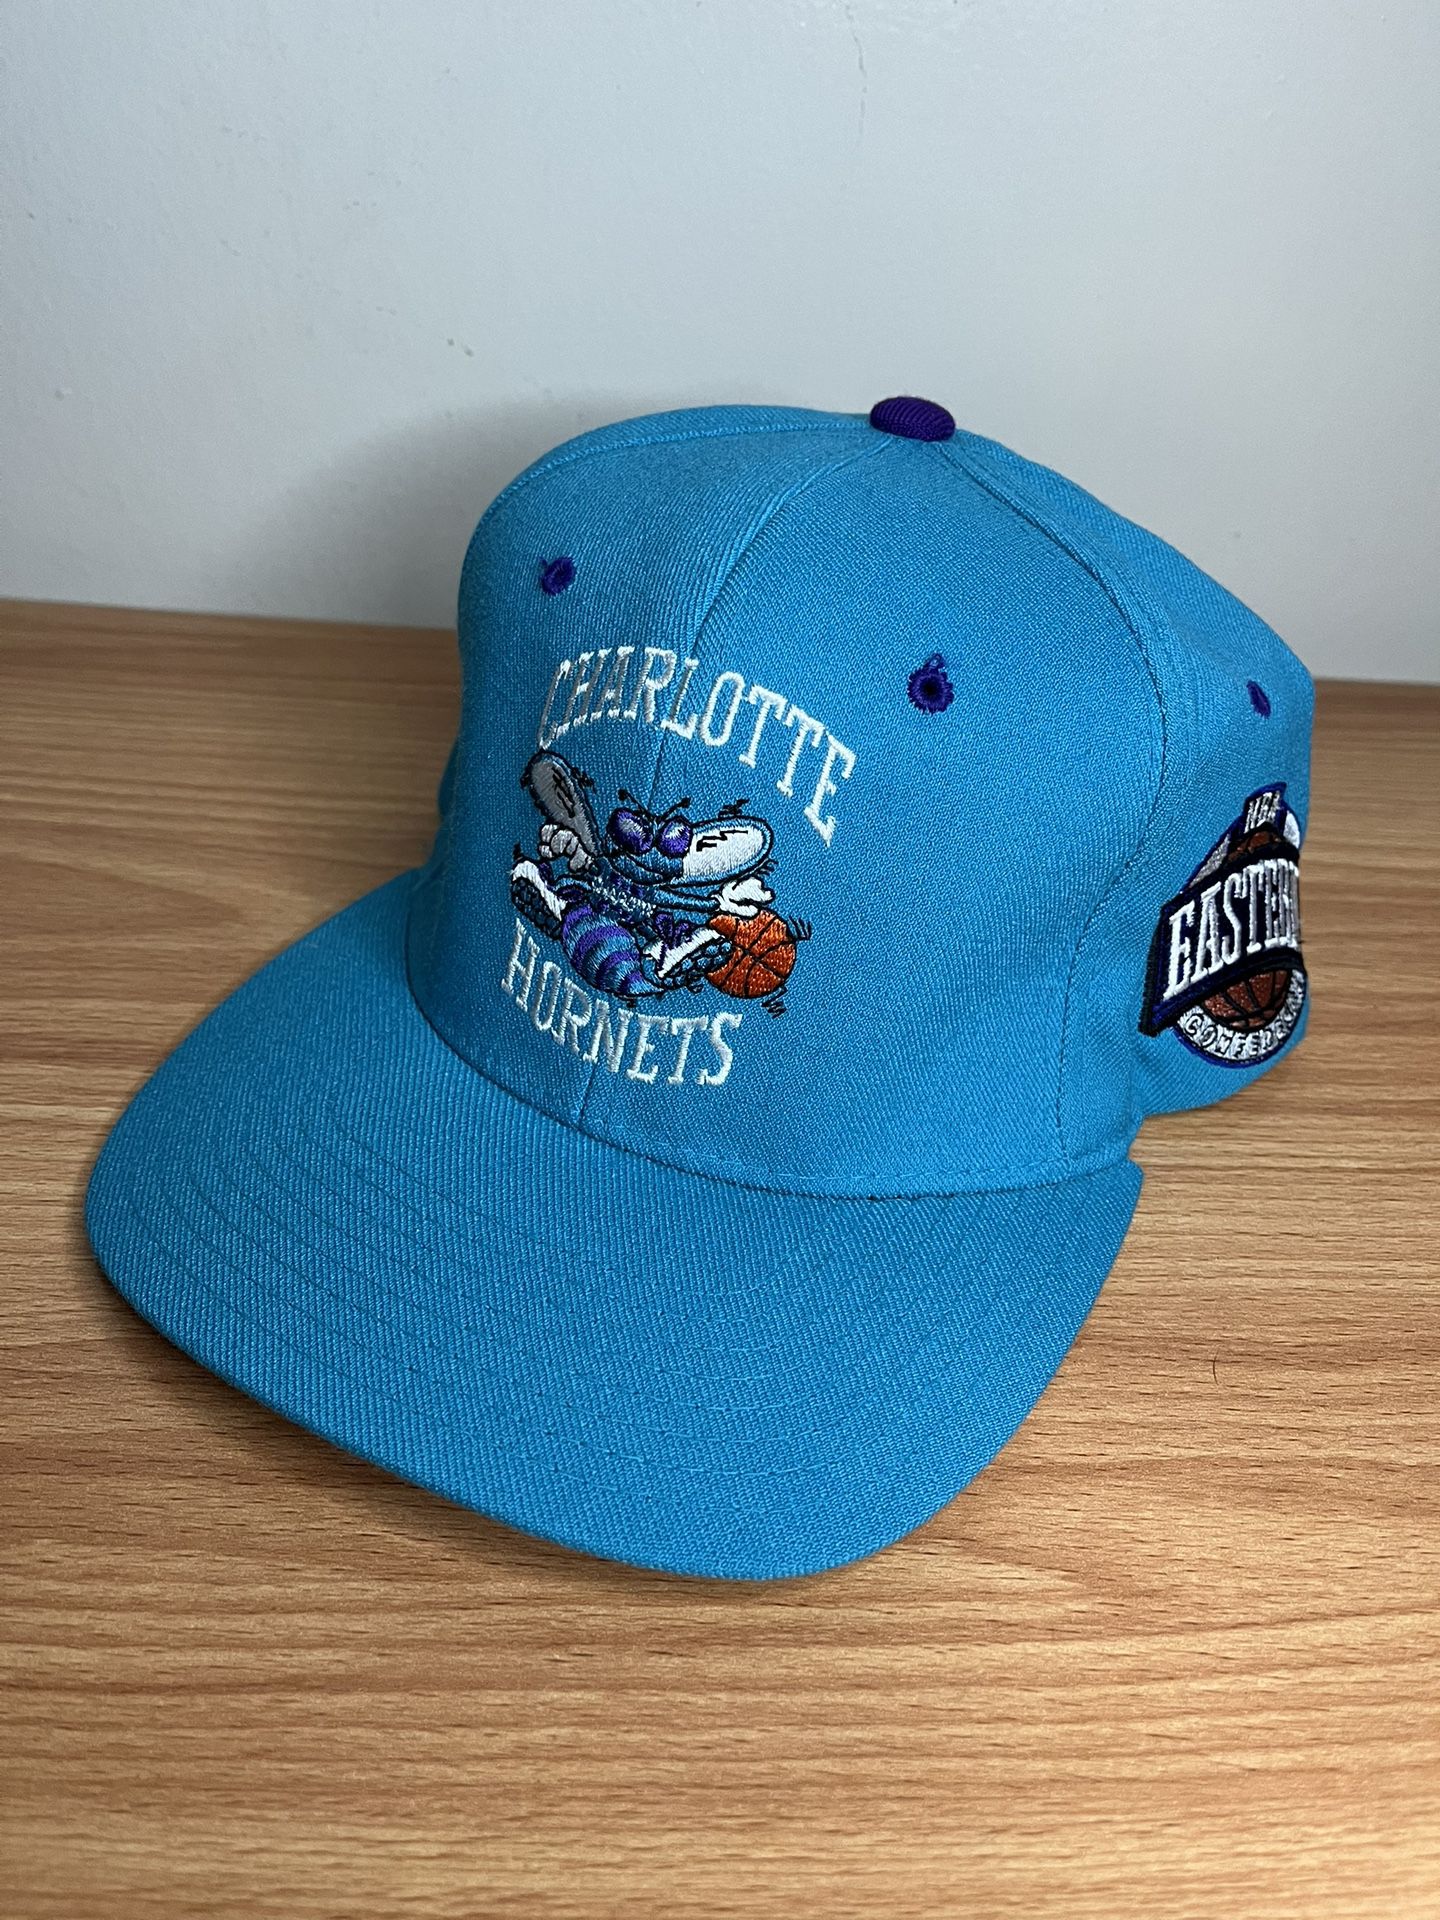 Vintage Starter Charlotte Hornets stretch fit Hat fits Sz 7 - 7 3/4 for